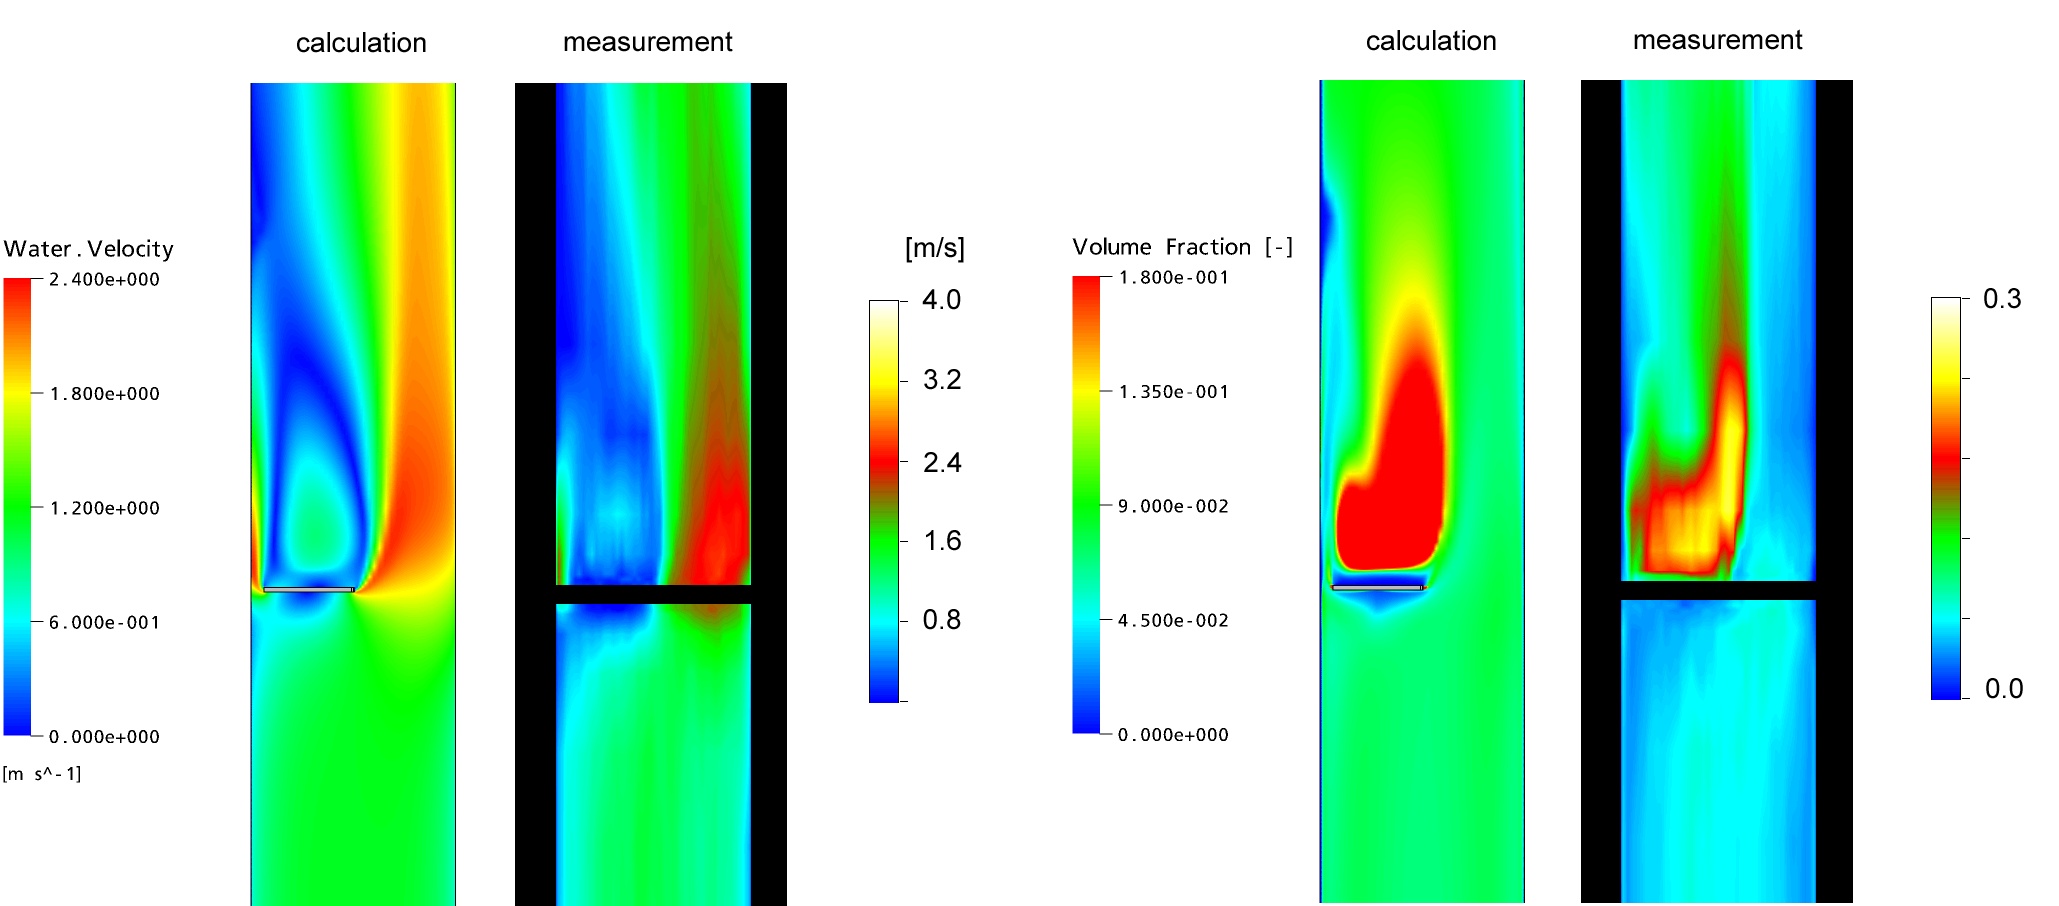 Vergleich Messung - Rechnung der Wassergeschwindigkeit und der integralen Gasgehaltsverteilung